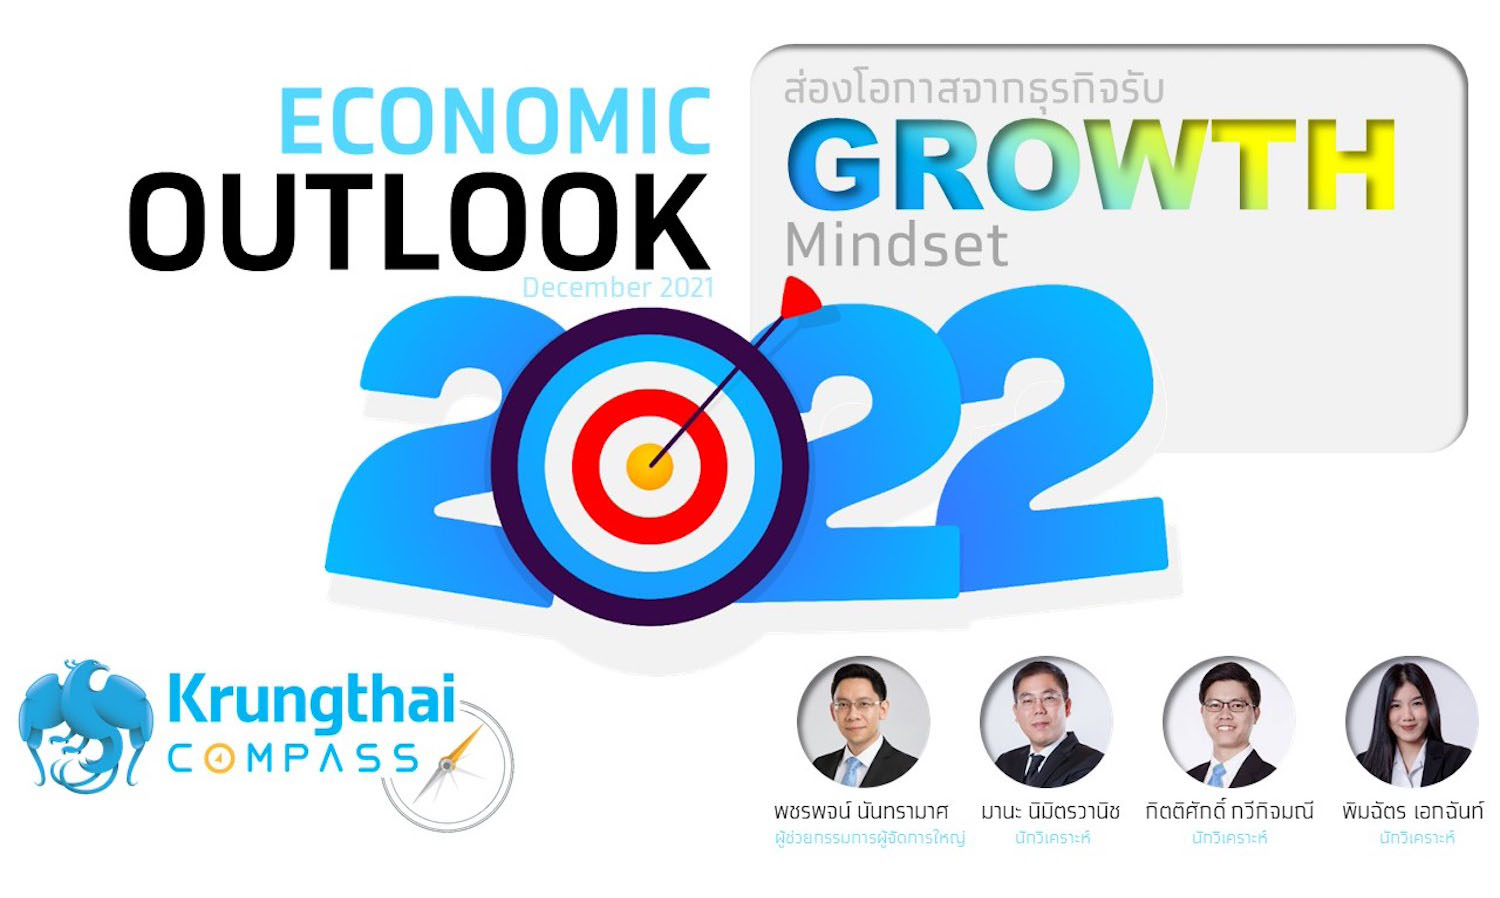 กรุงไทยประเมินเศรษฐกิจปี 2565 โตสูงขึ้นที่ 3.8% ชี้เป็นจุดเริ่มต้นของการฟื้นตัวทางเศรษฐกิจ แนะผู้ประกอบการปรับตัวรับแนวคิด “GROWTH” ติดสปีดให้เศรษฐกิจไทย